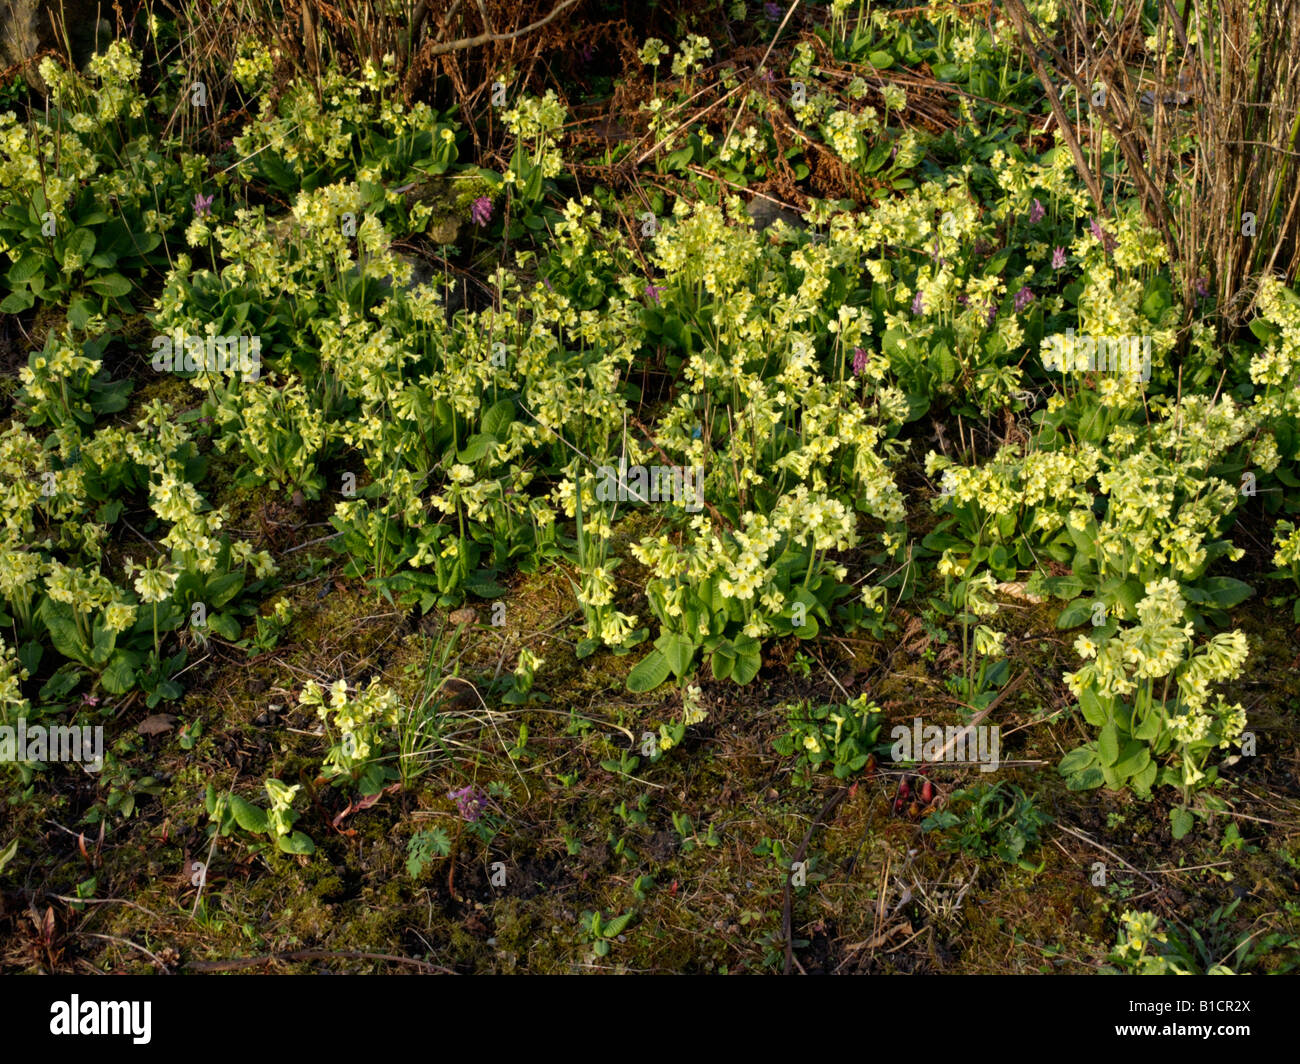 True oxlip (Primula elatior) Stock Photo